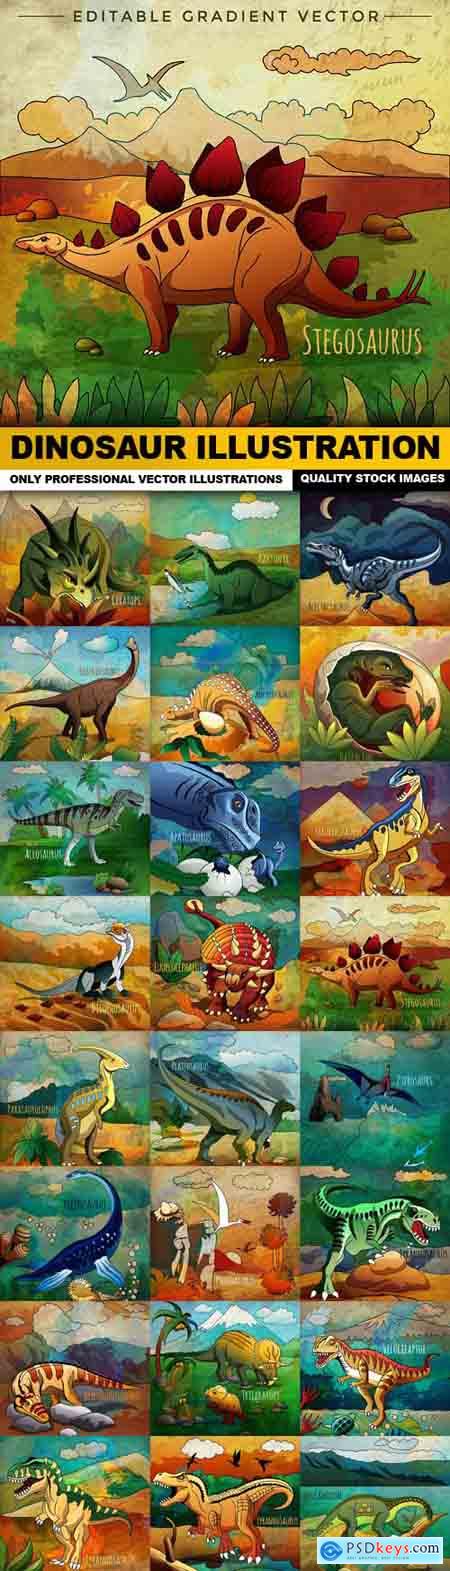 Dinosaur Illustration - 24 Vector